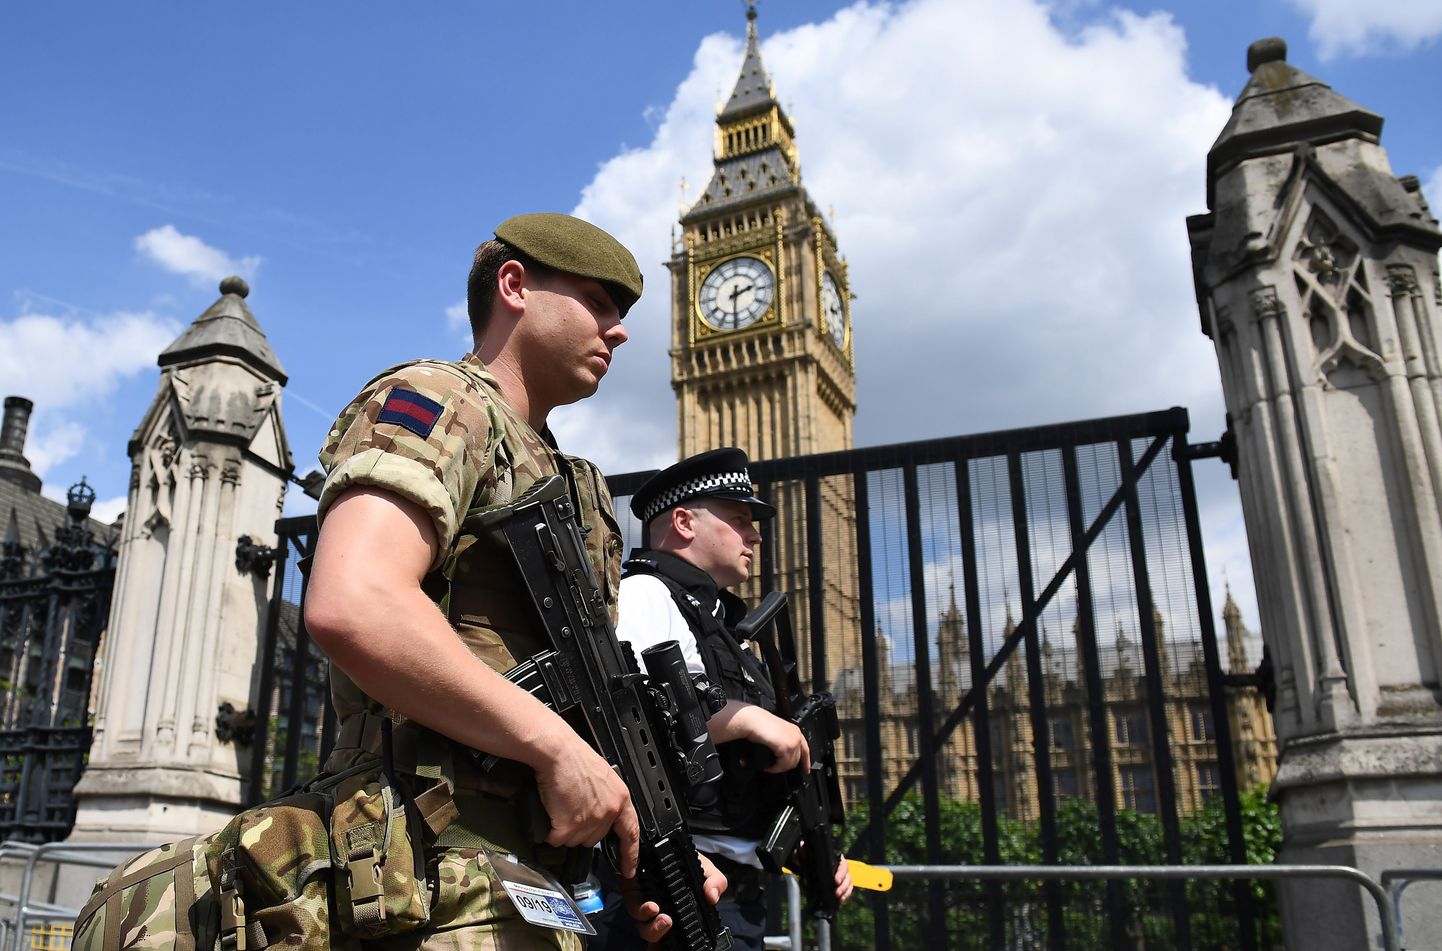 Briti sõdur patrullimas parlamendihoone juures.